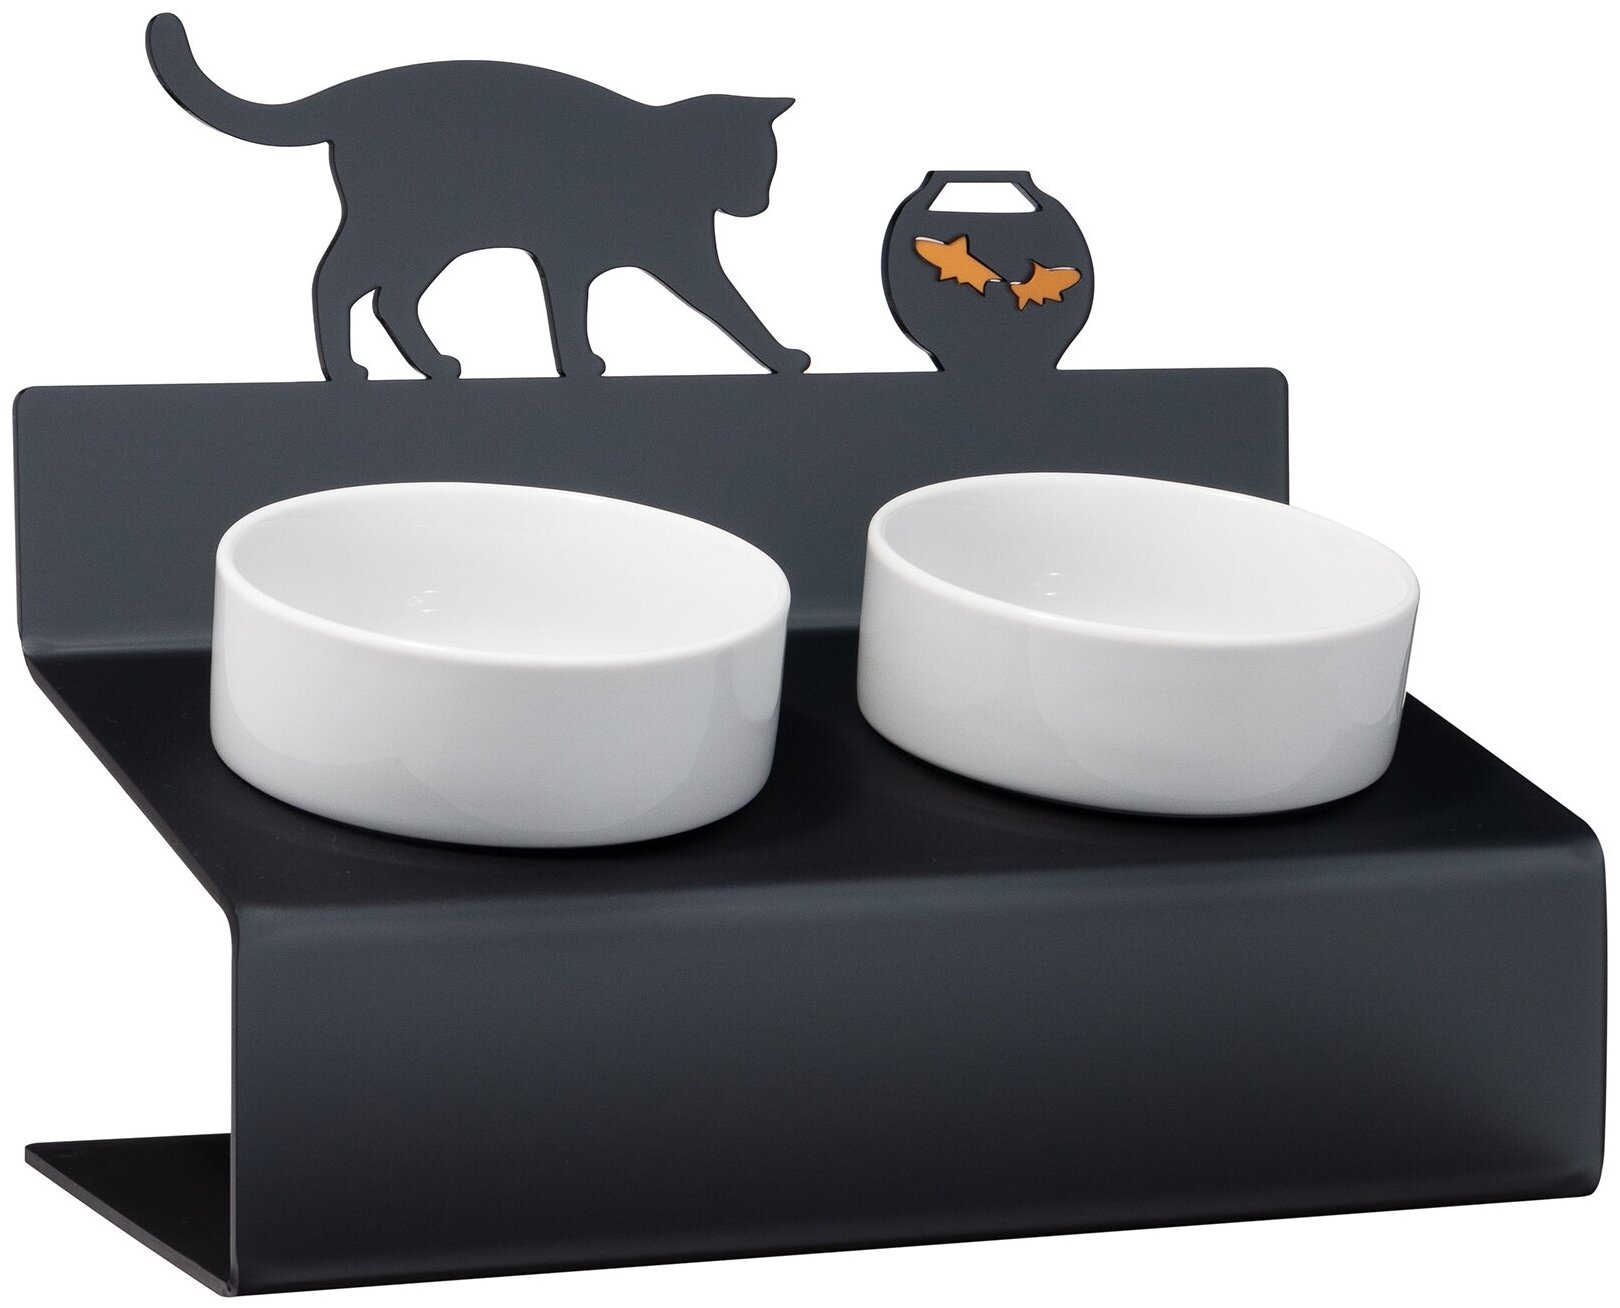 Миска для кошек на подставке с наклоном Artmiska "Кот и рыбы" XS двойная 2x360 мл, графитовая